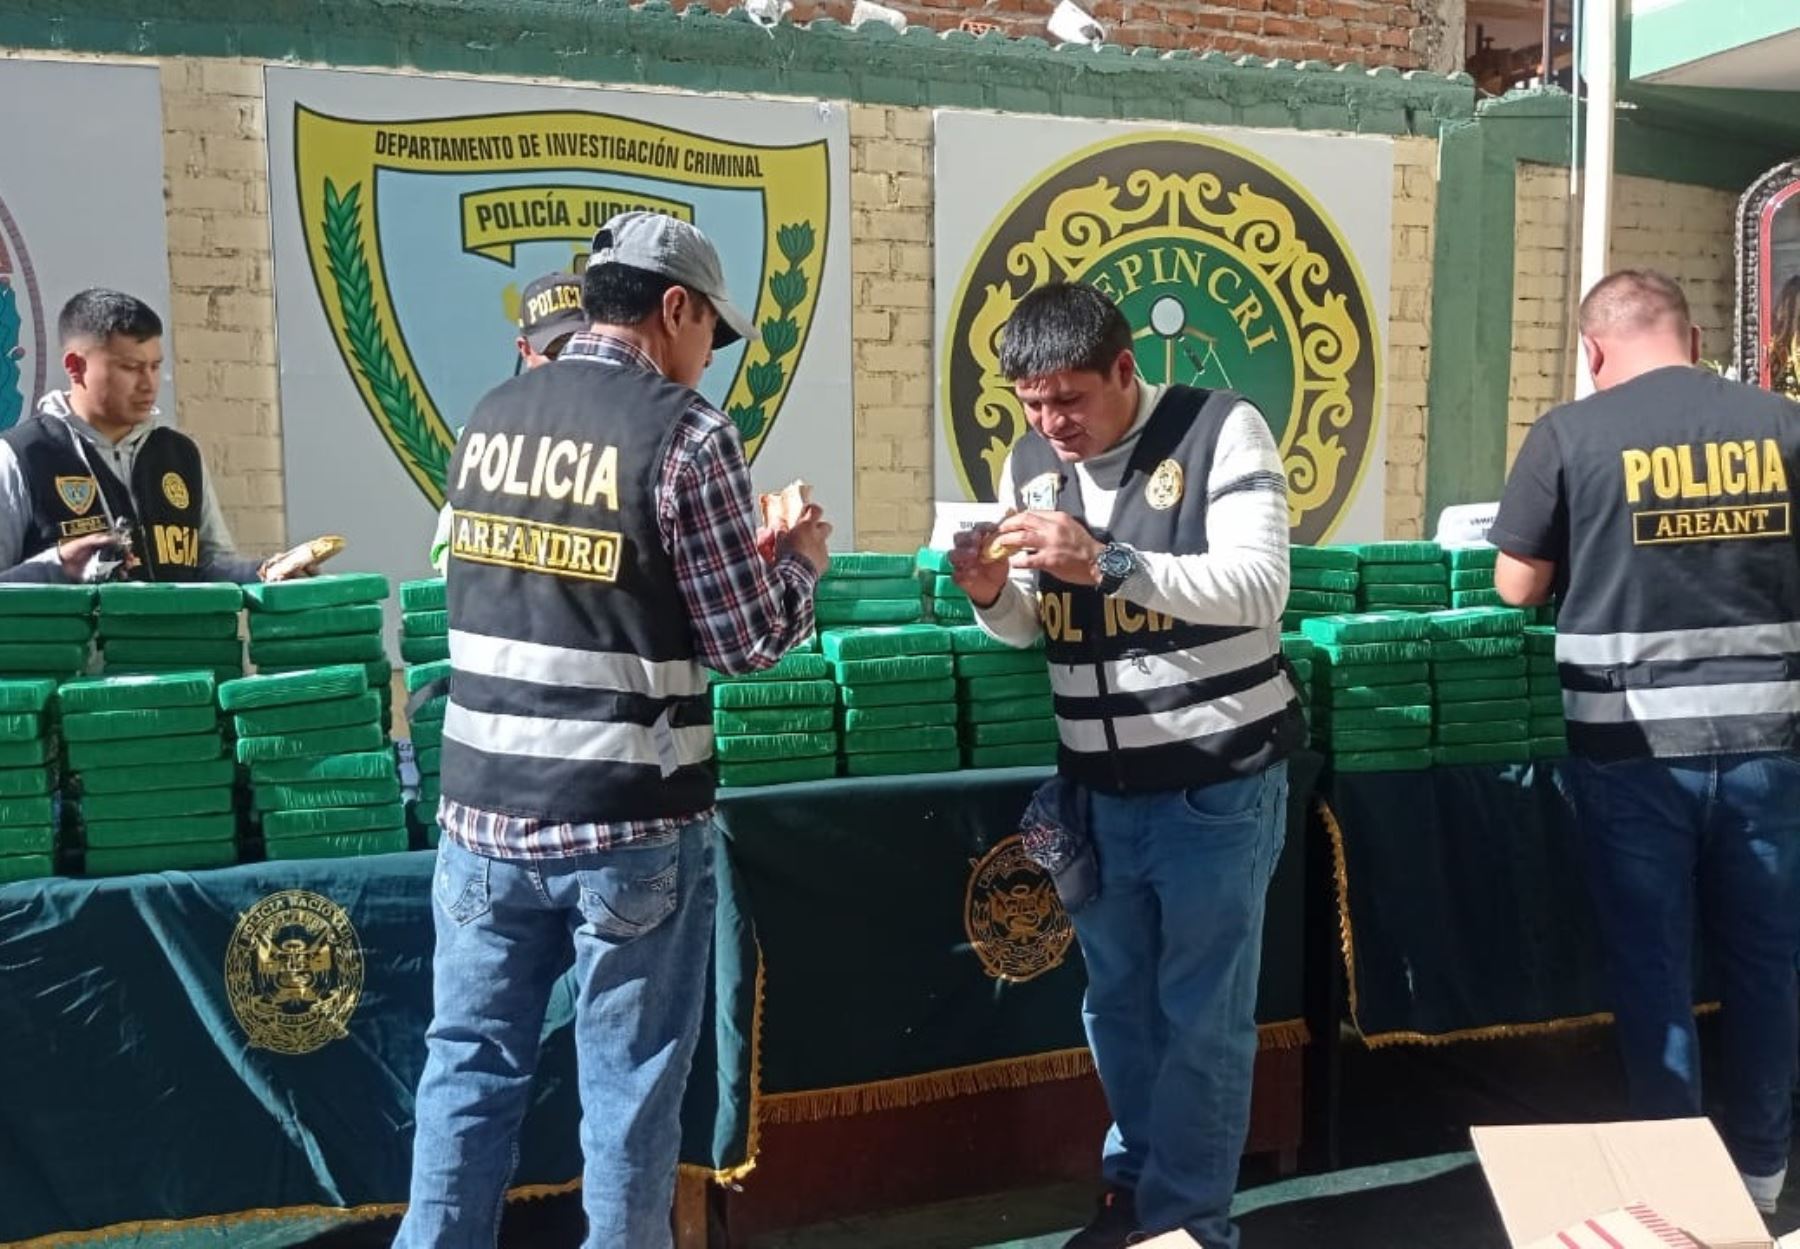 Policía desarticula banda "Los ruteros del Altiplano" que se dedicaba al tráfico de drogas en Puno e incauta 270 kg de alcaloide de cocaína.